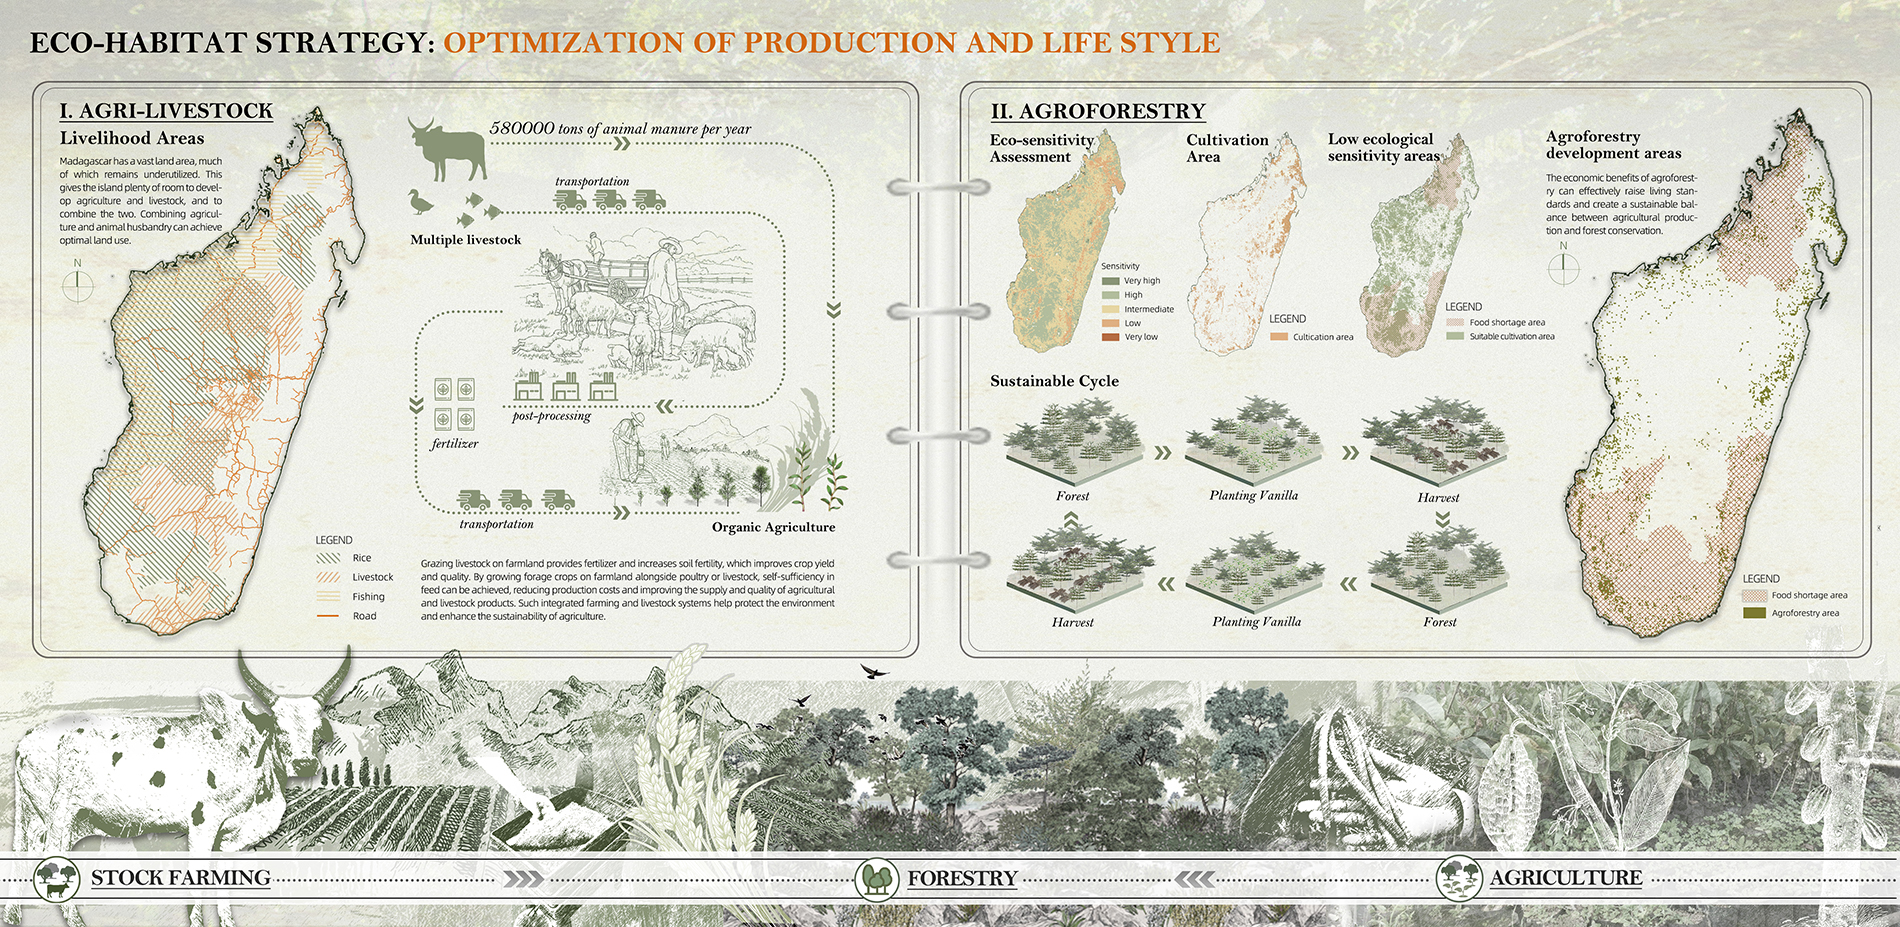 Eco-habitat strategy: Optimization of Production and life style